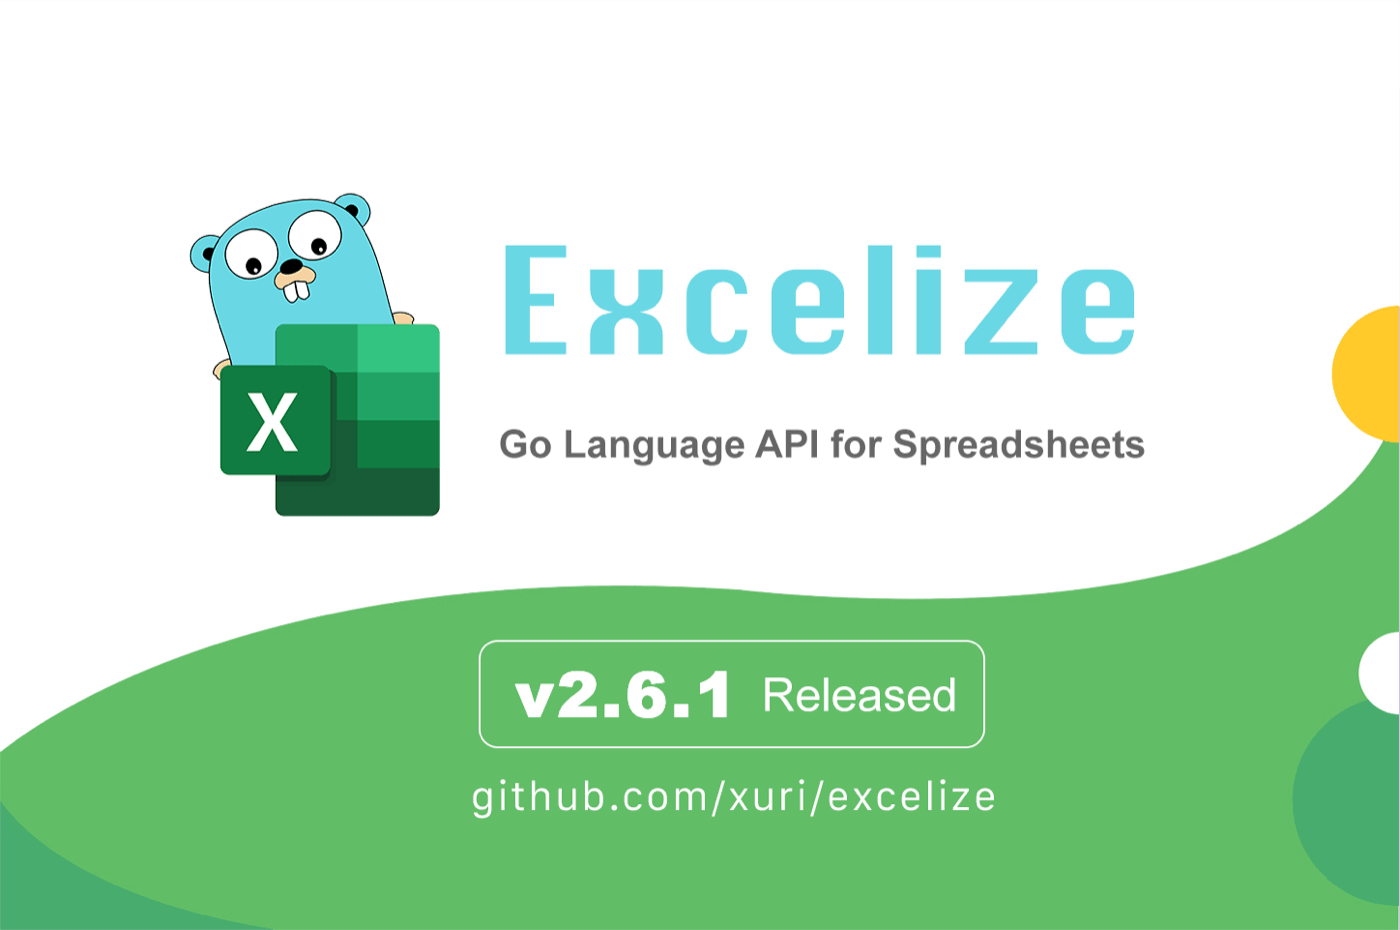 Go 言語スプレッドシートライブラリ：Excelize 2.6.1 がリリースされました